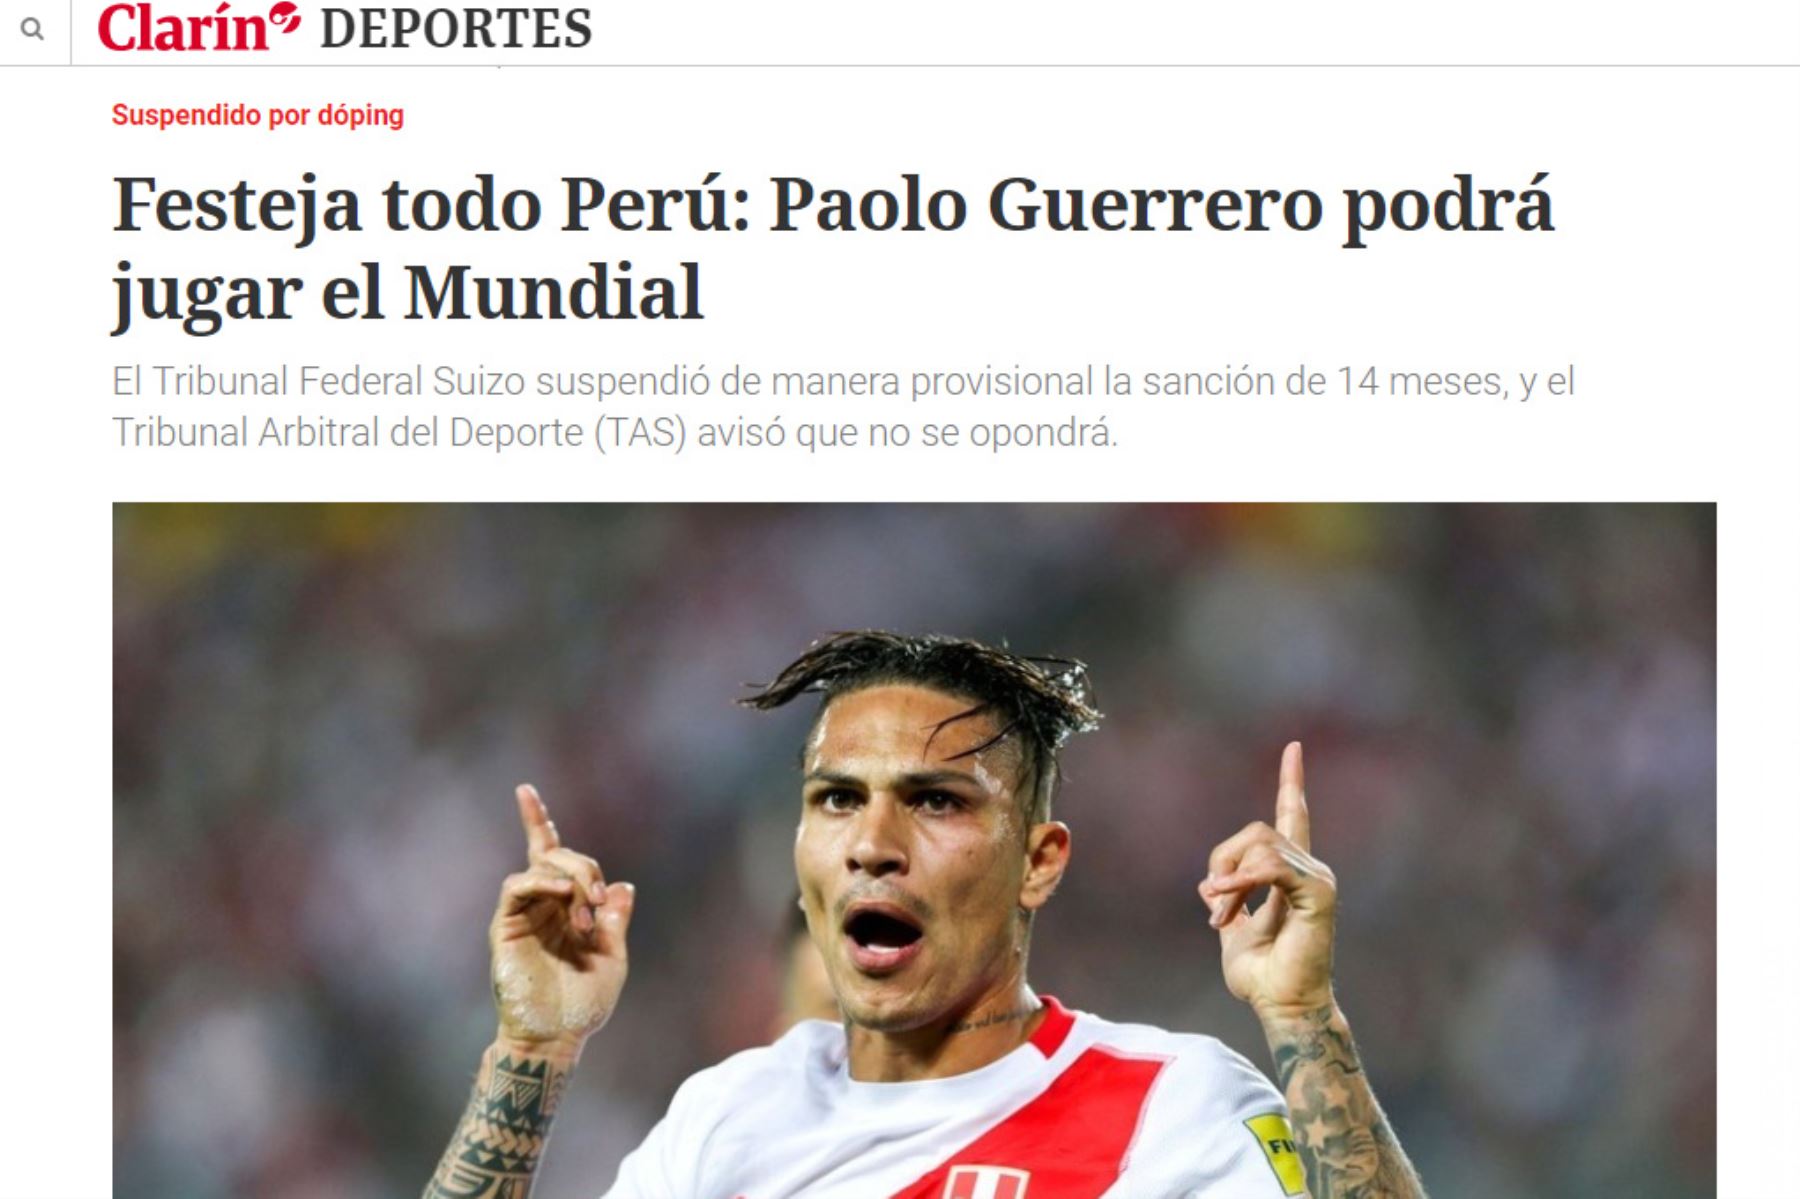 La noticia de Paolo Guerrero en Clarín de Argentina. Foto: Captura.